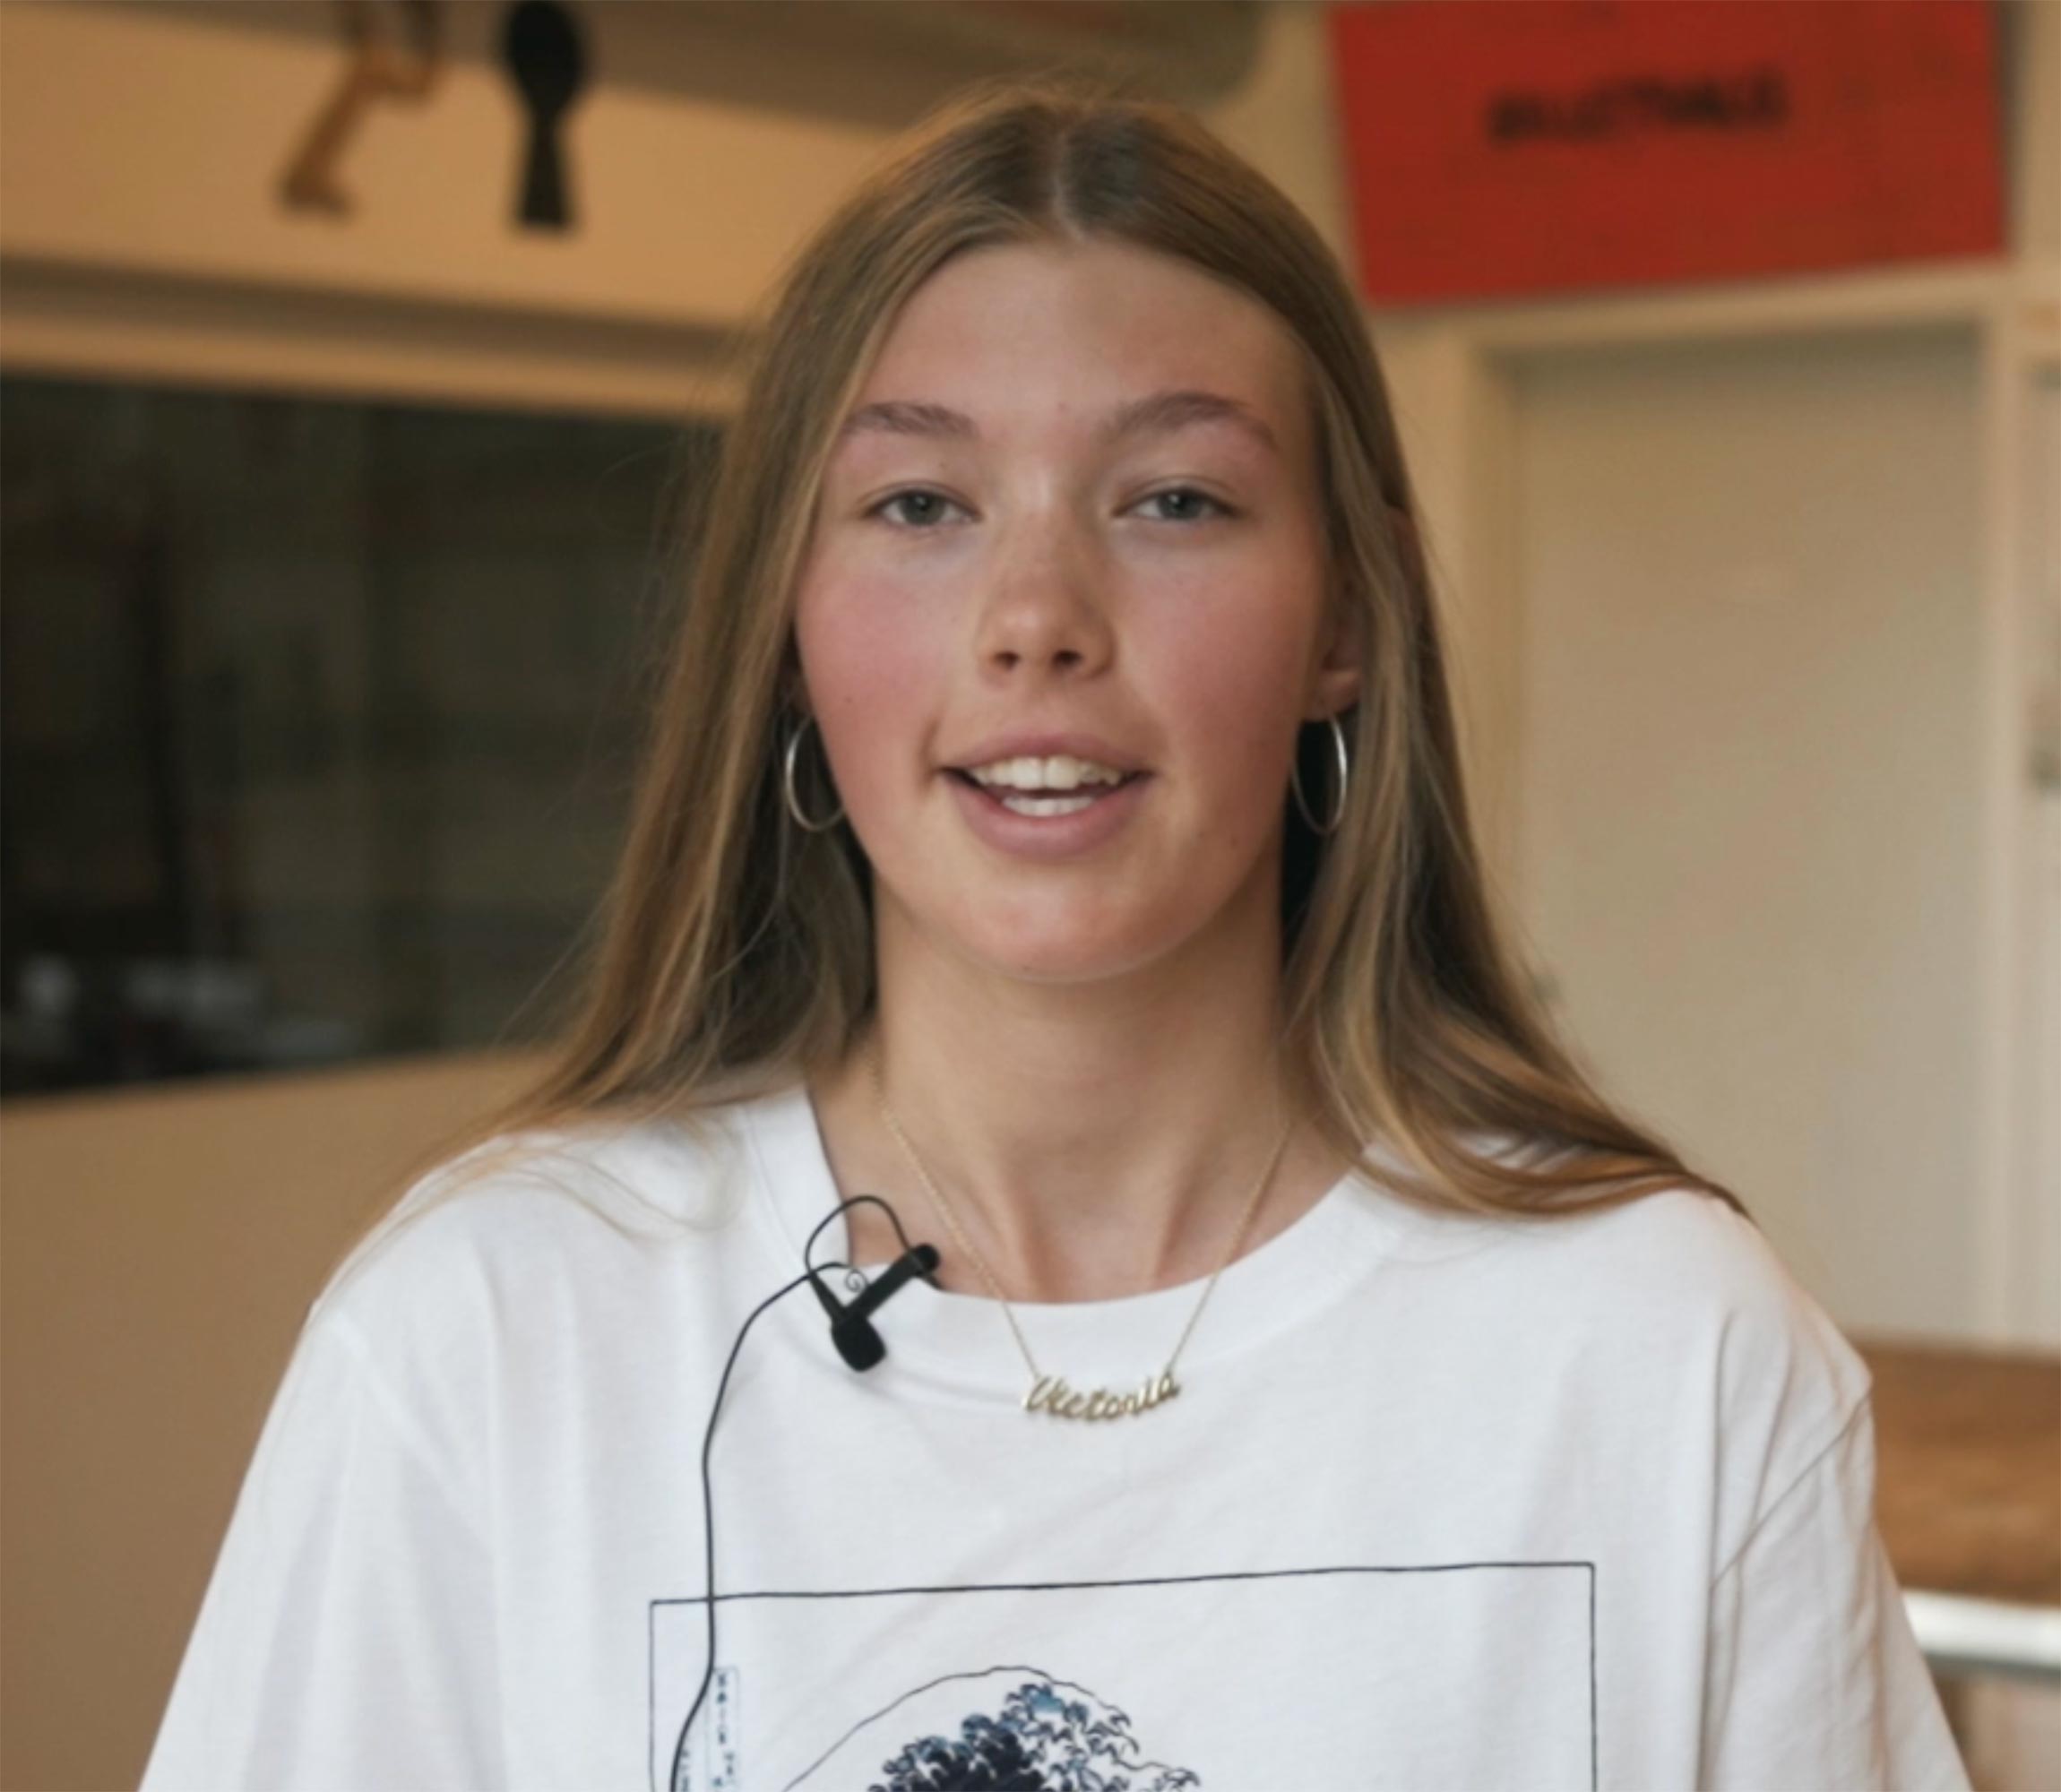 Victoria fortæller om ridning og livet på Fjordvang Efterskole